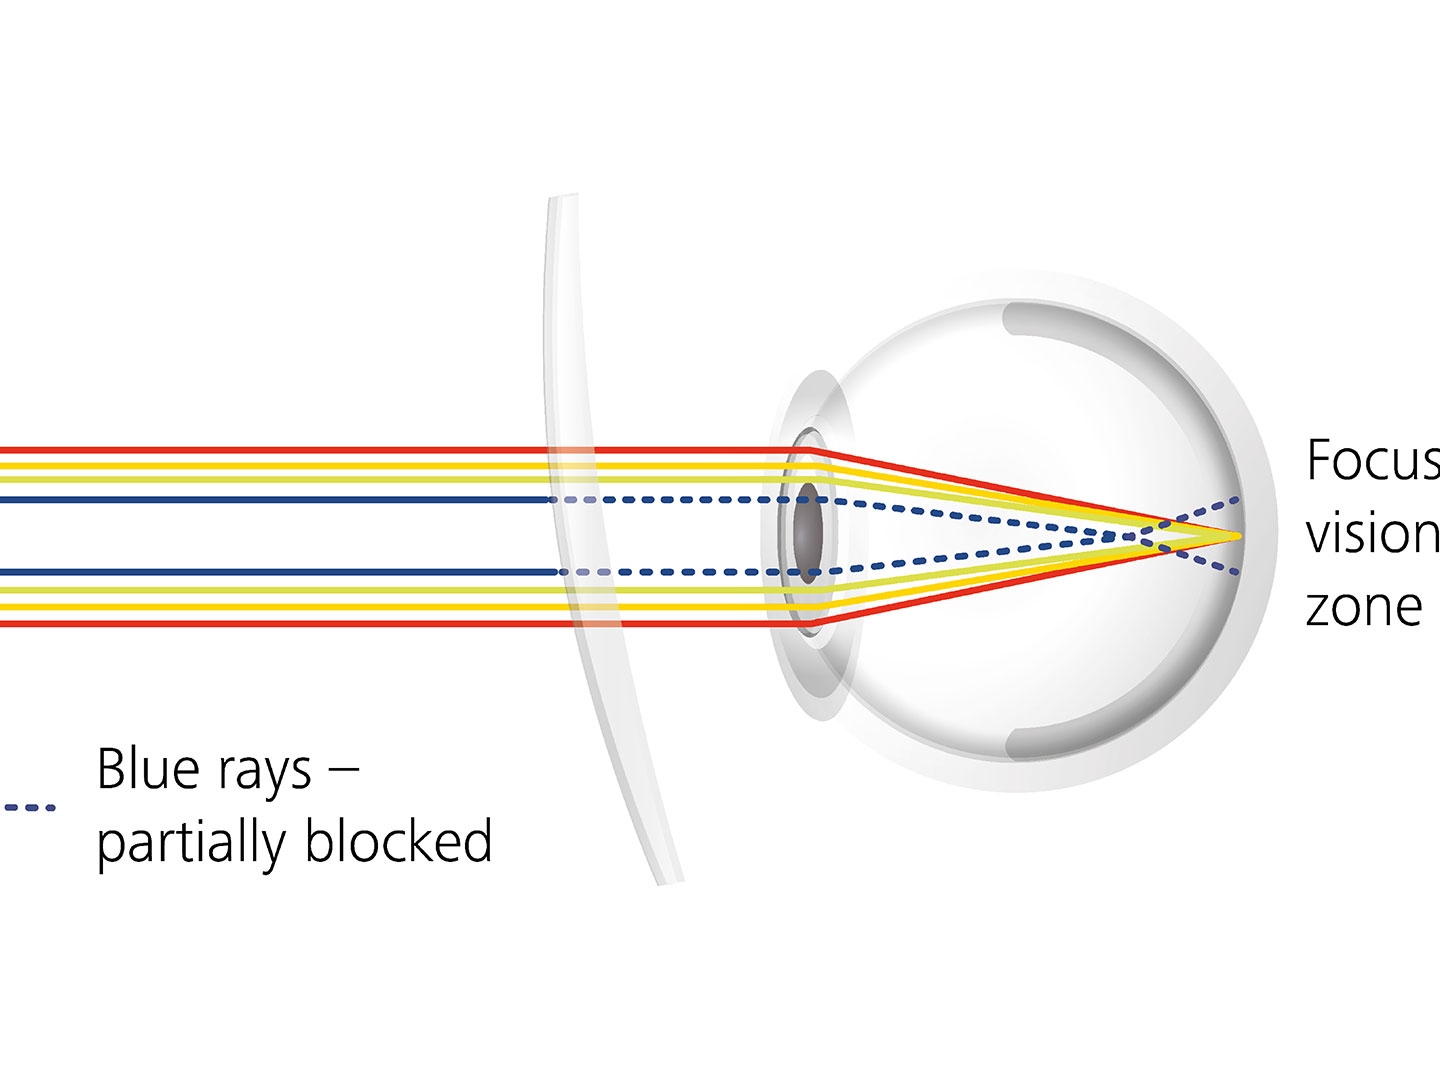 Показано, как покрытие линзы уменьшает блики за счет частичной блокировки синих лучей. 